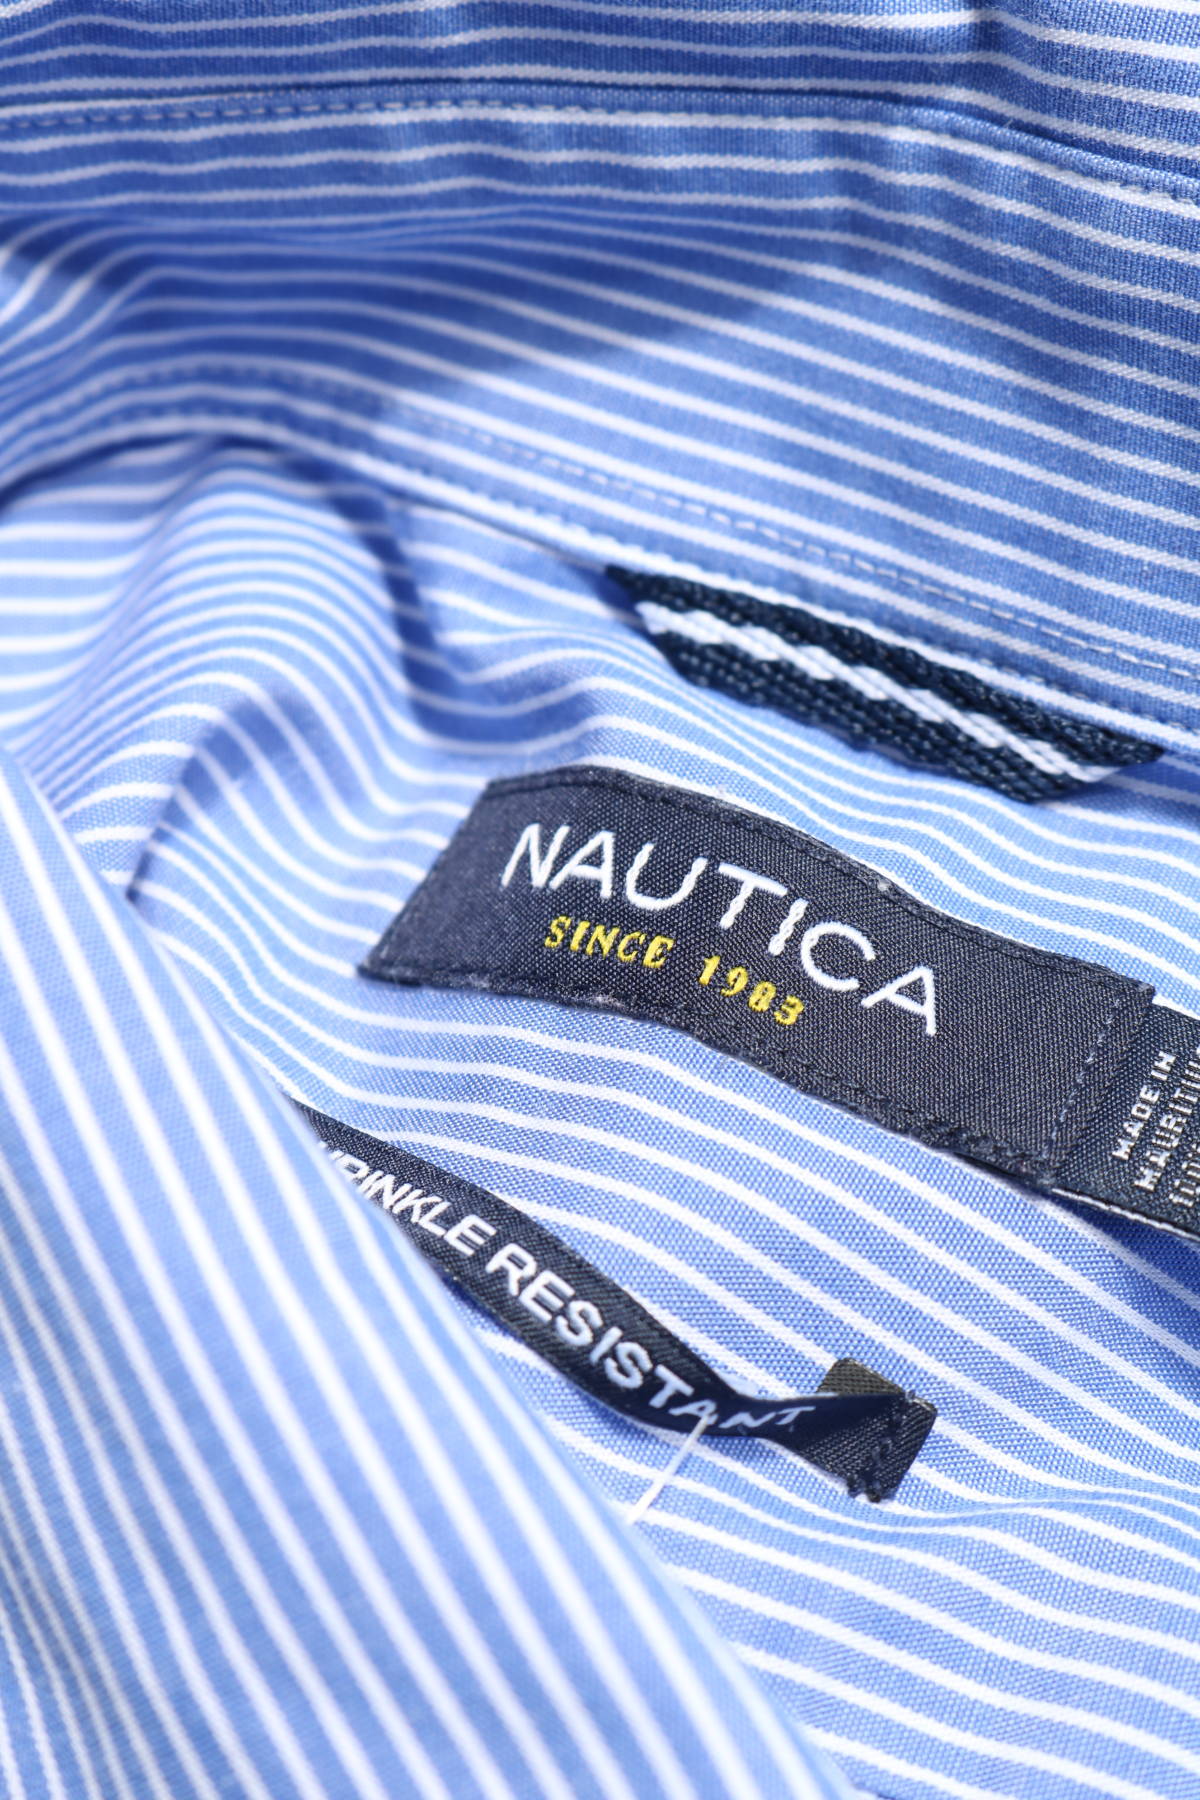 Спортно-елегантна риза NAUTICA3